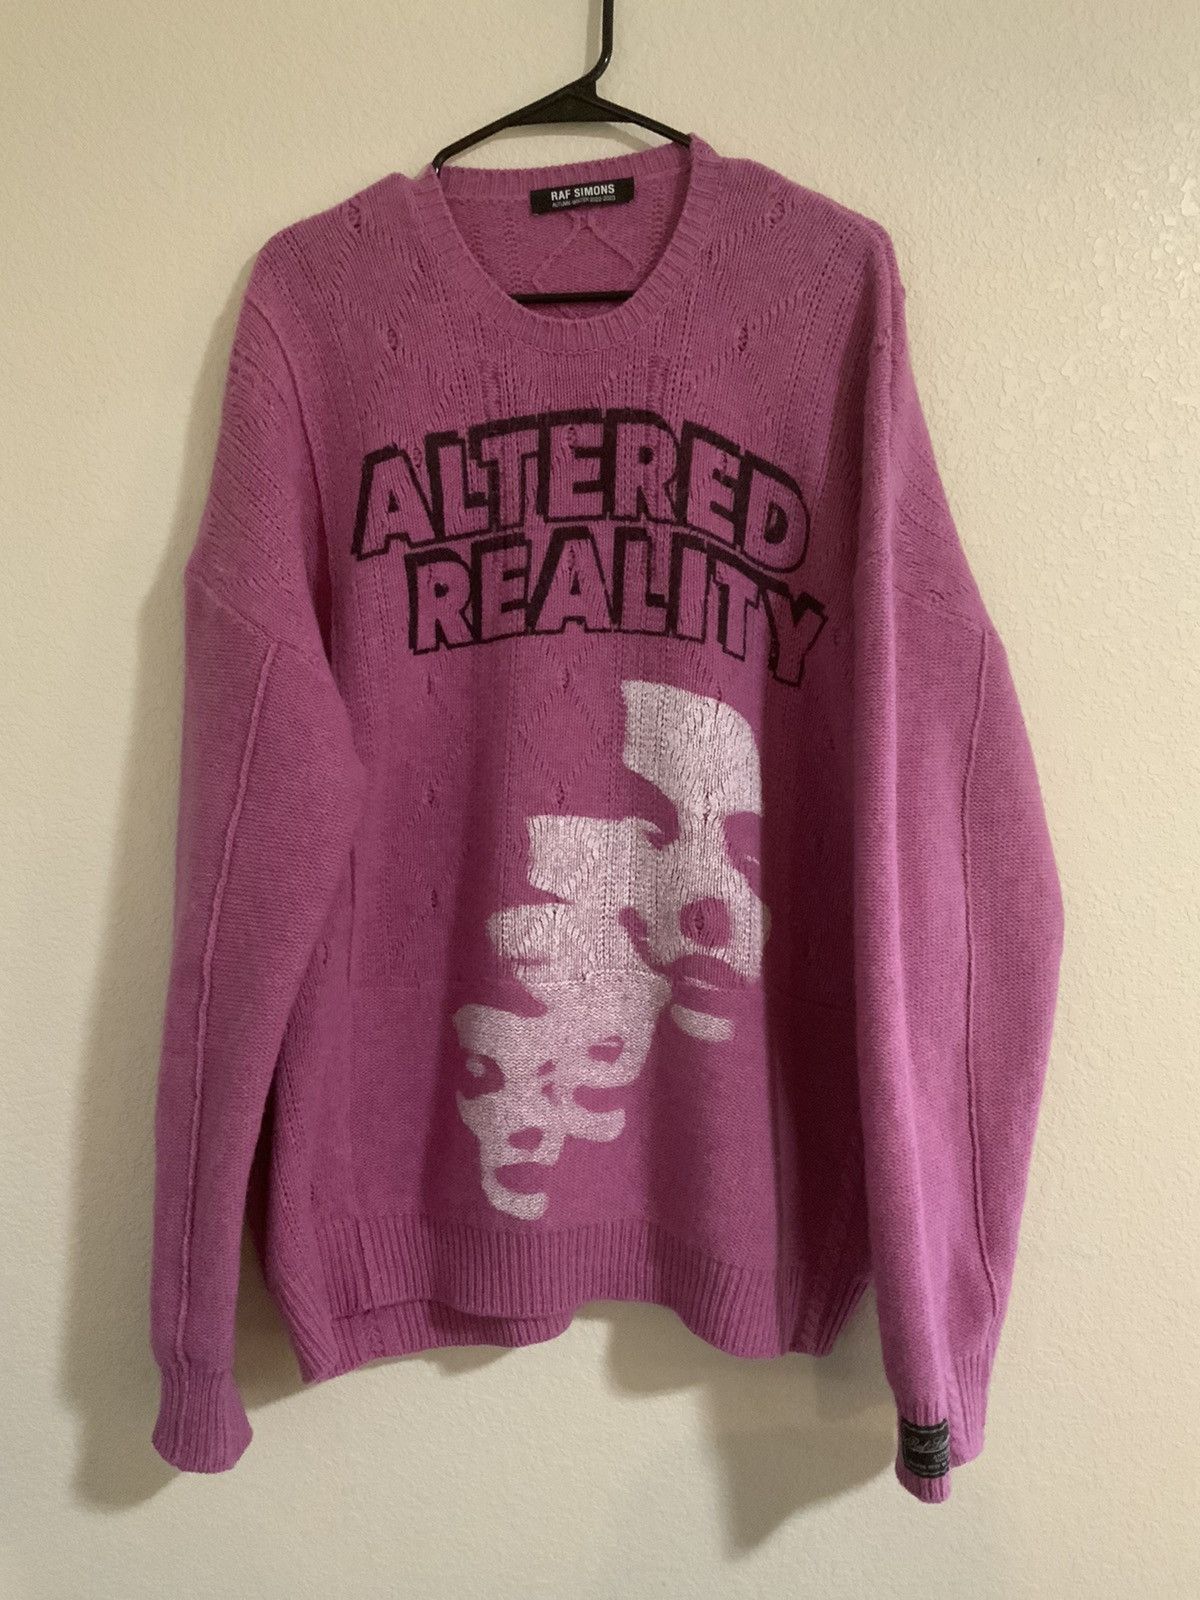 Raf Simons Raf Simons Altered Reality Sweater | Grailed